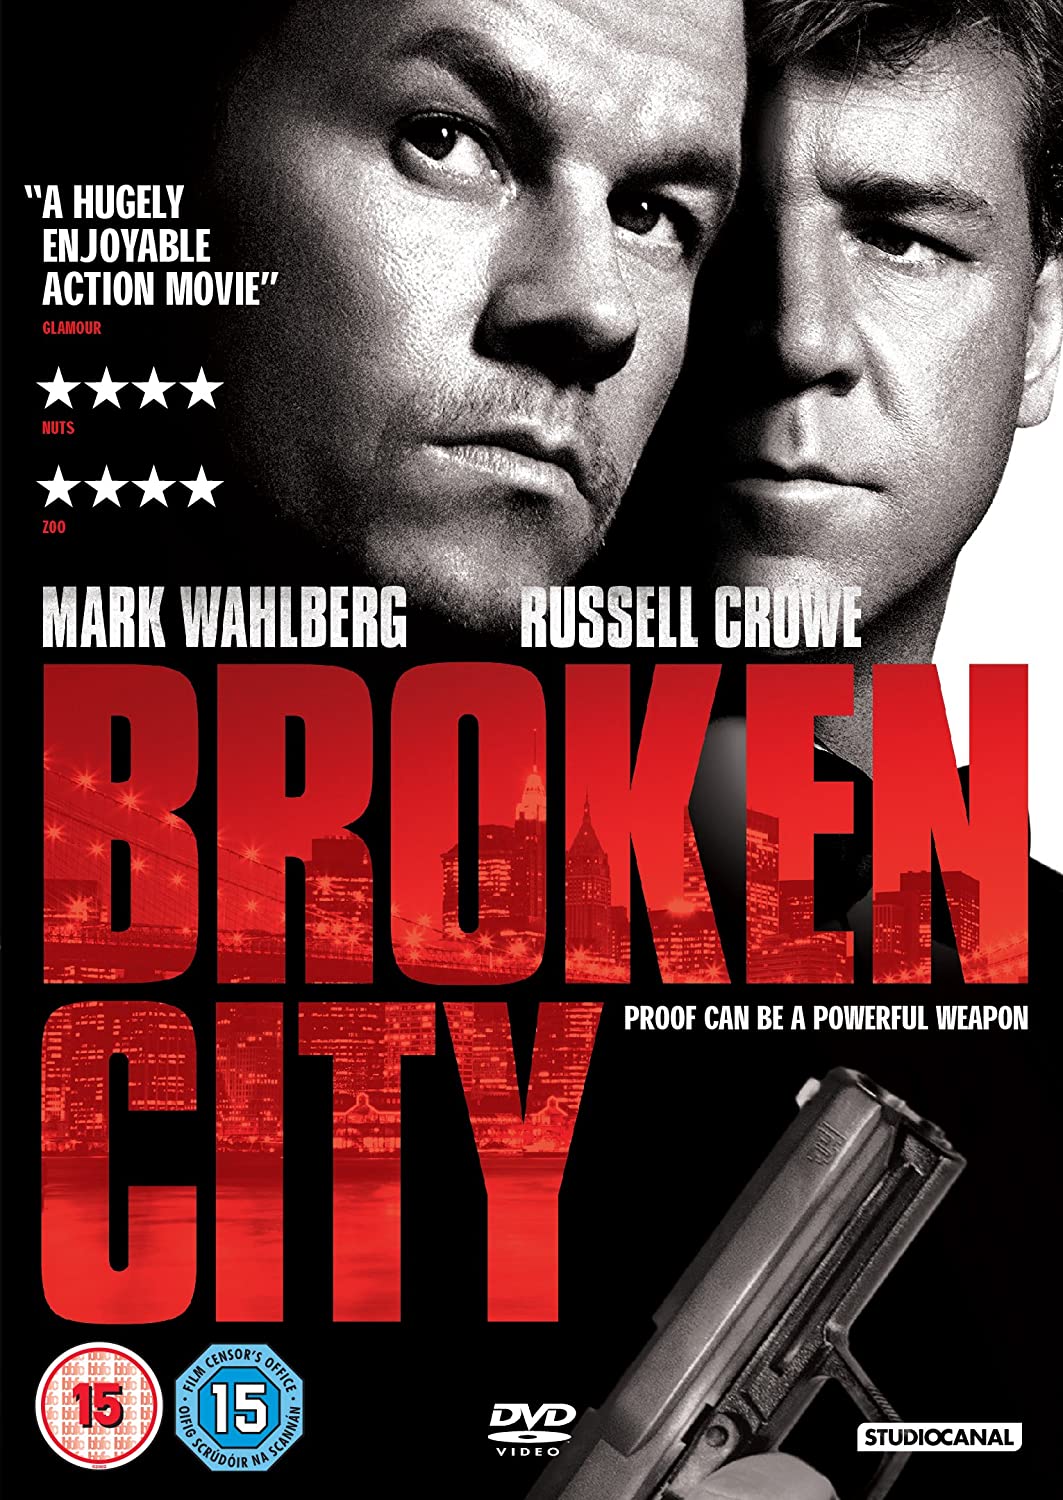 Broken City [2013] - Thriller [DVD]